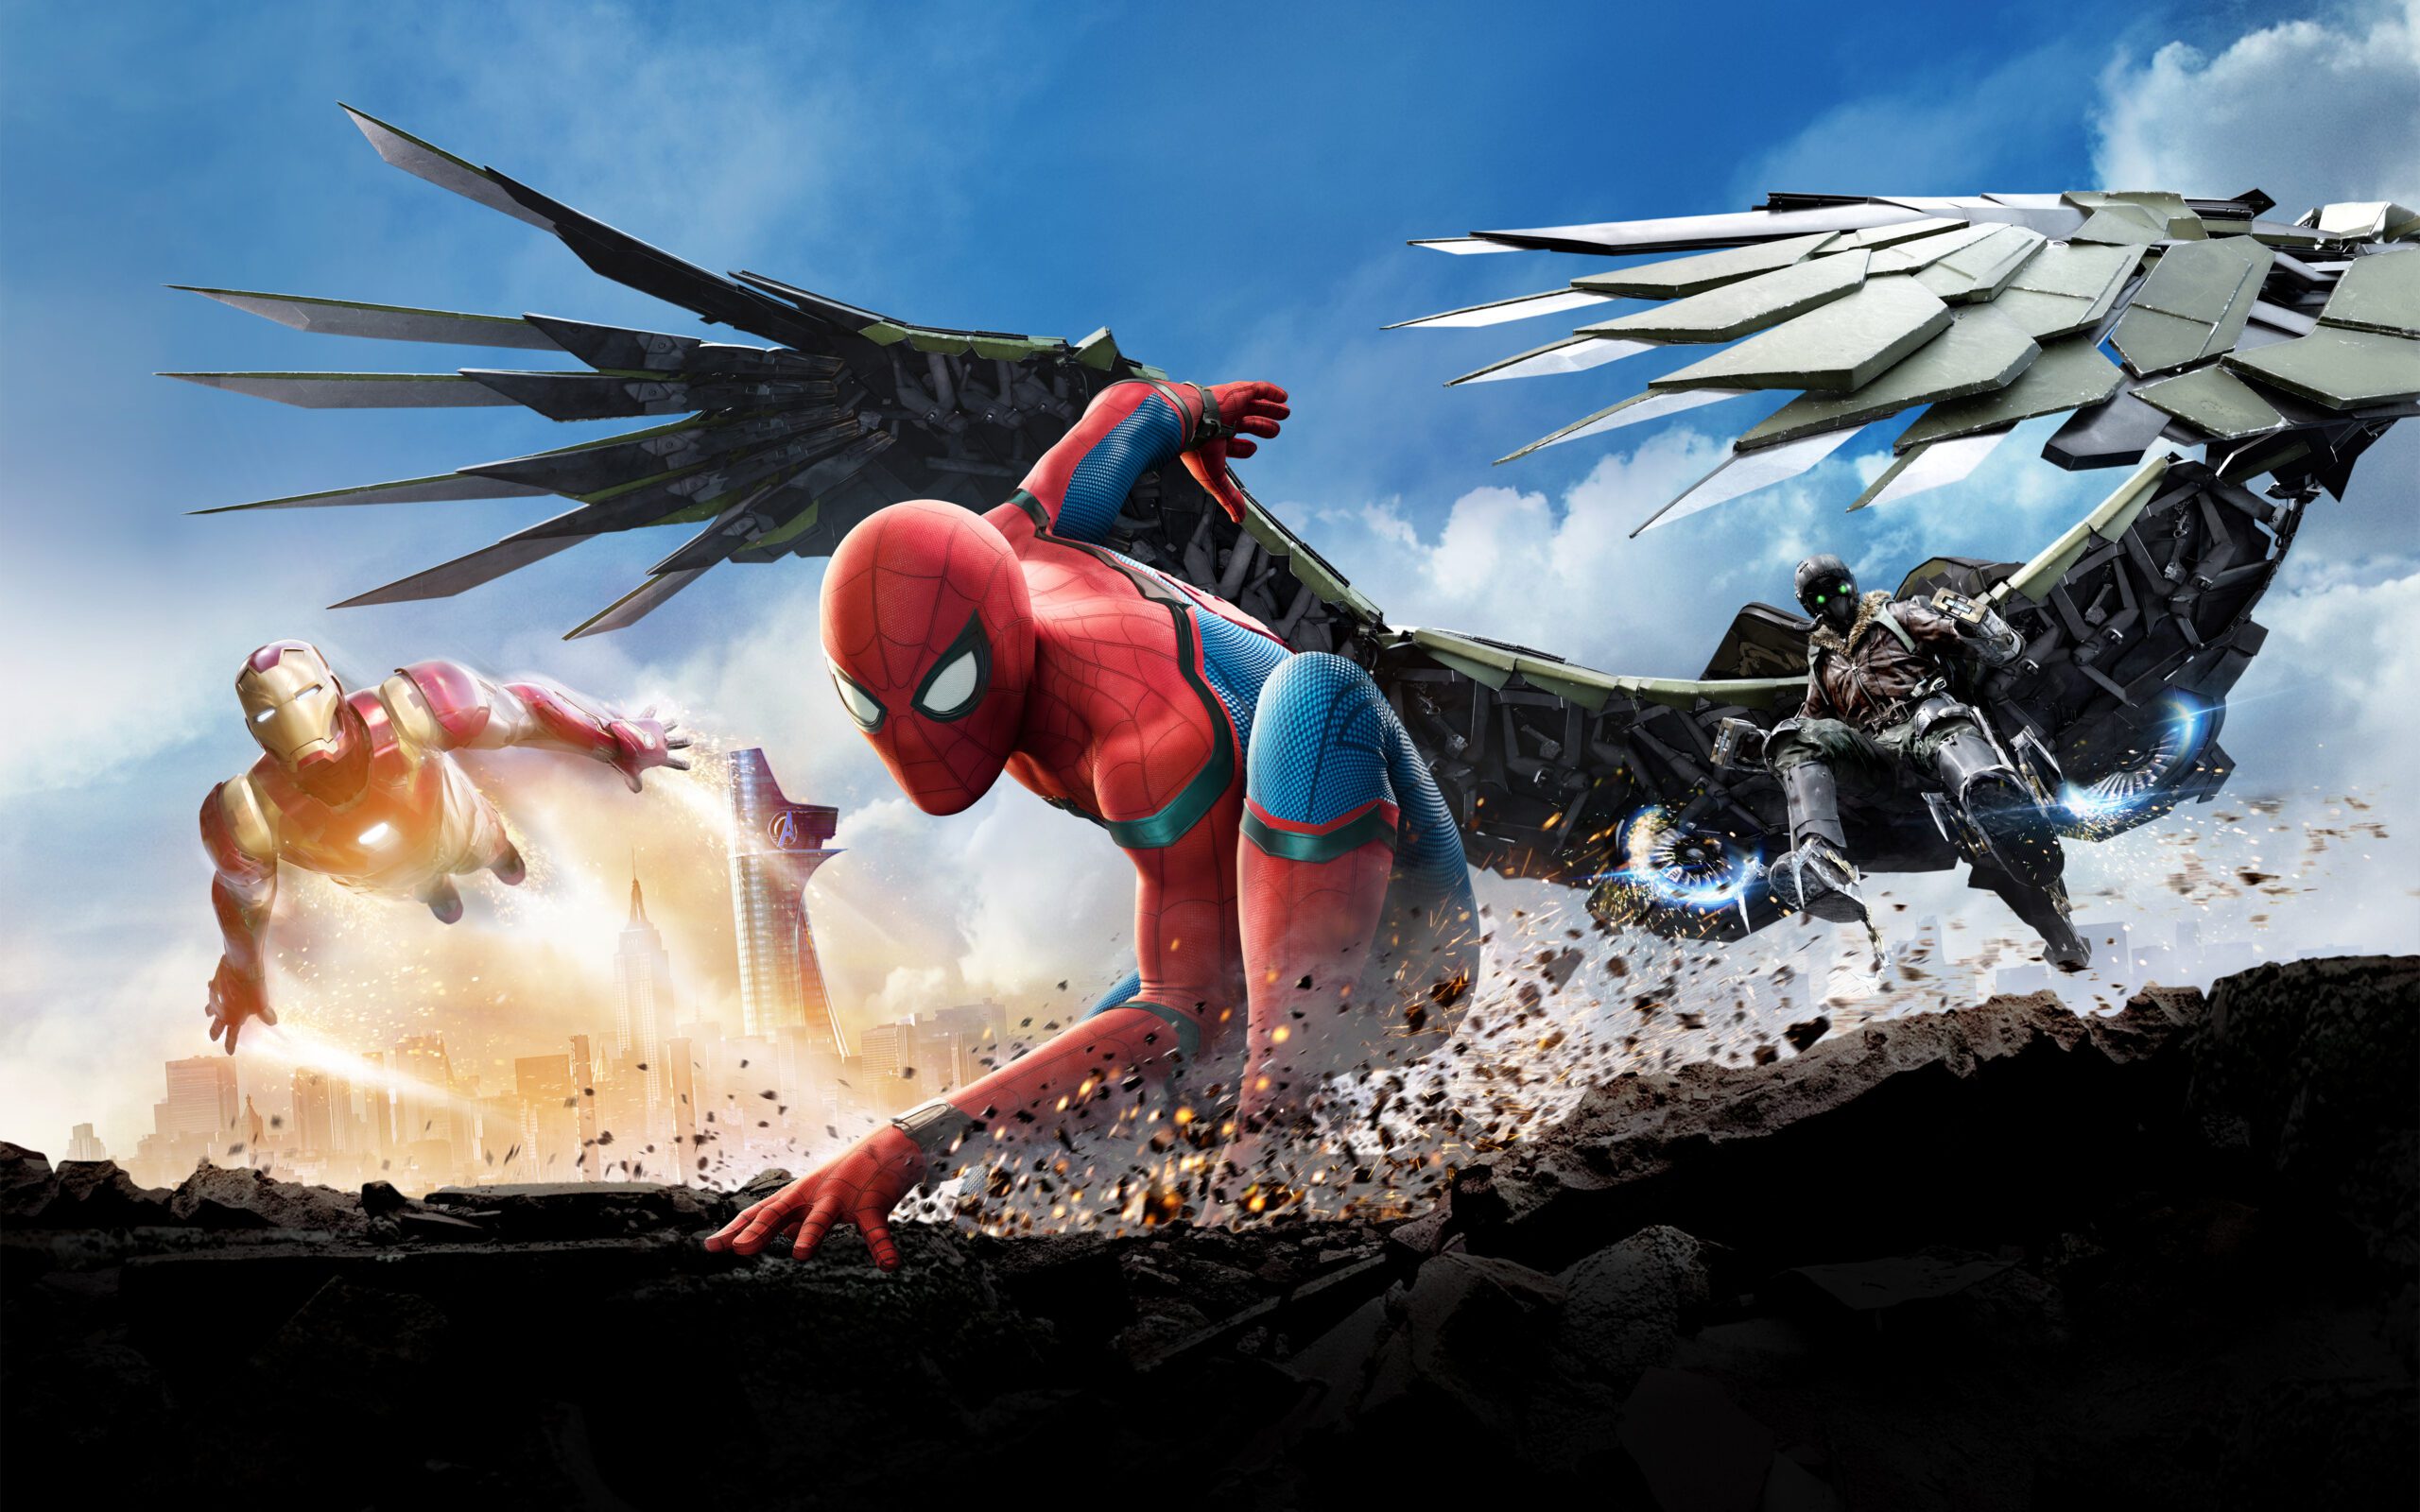 Le nouveau poster de Spider-Man : Homecoming est méchamment parodié